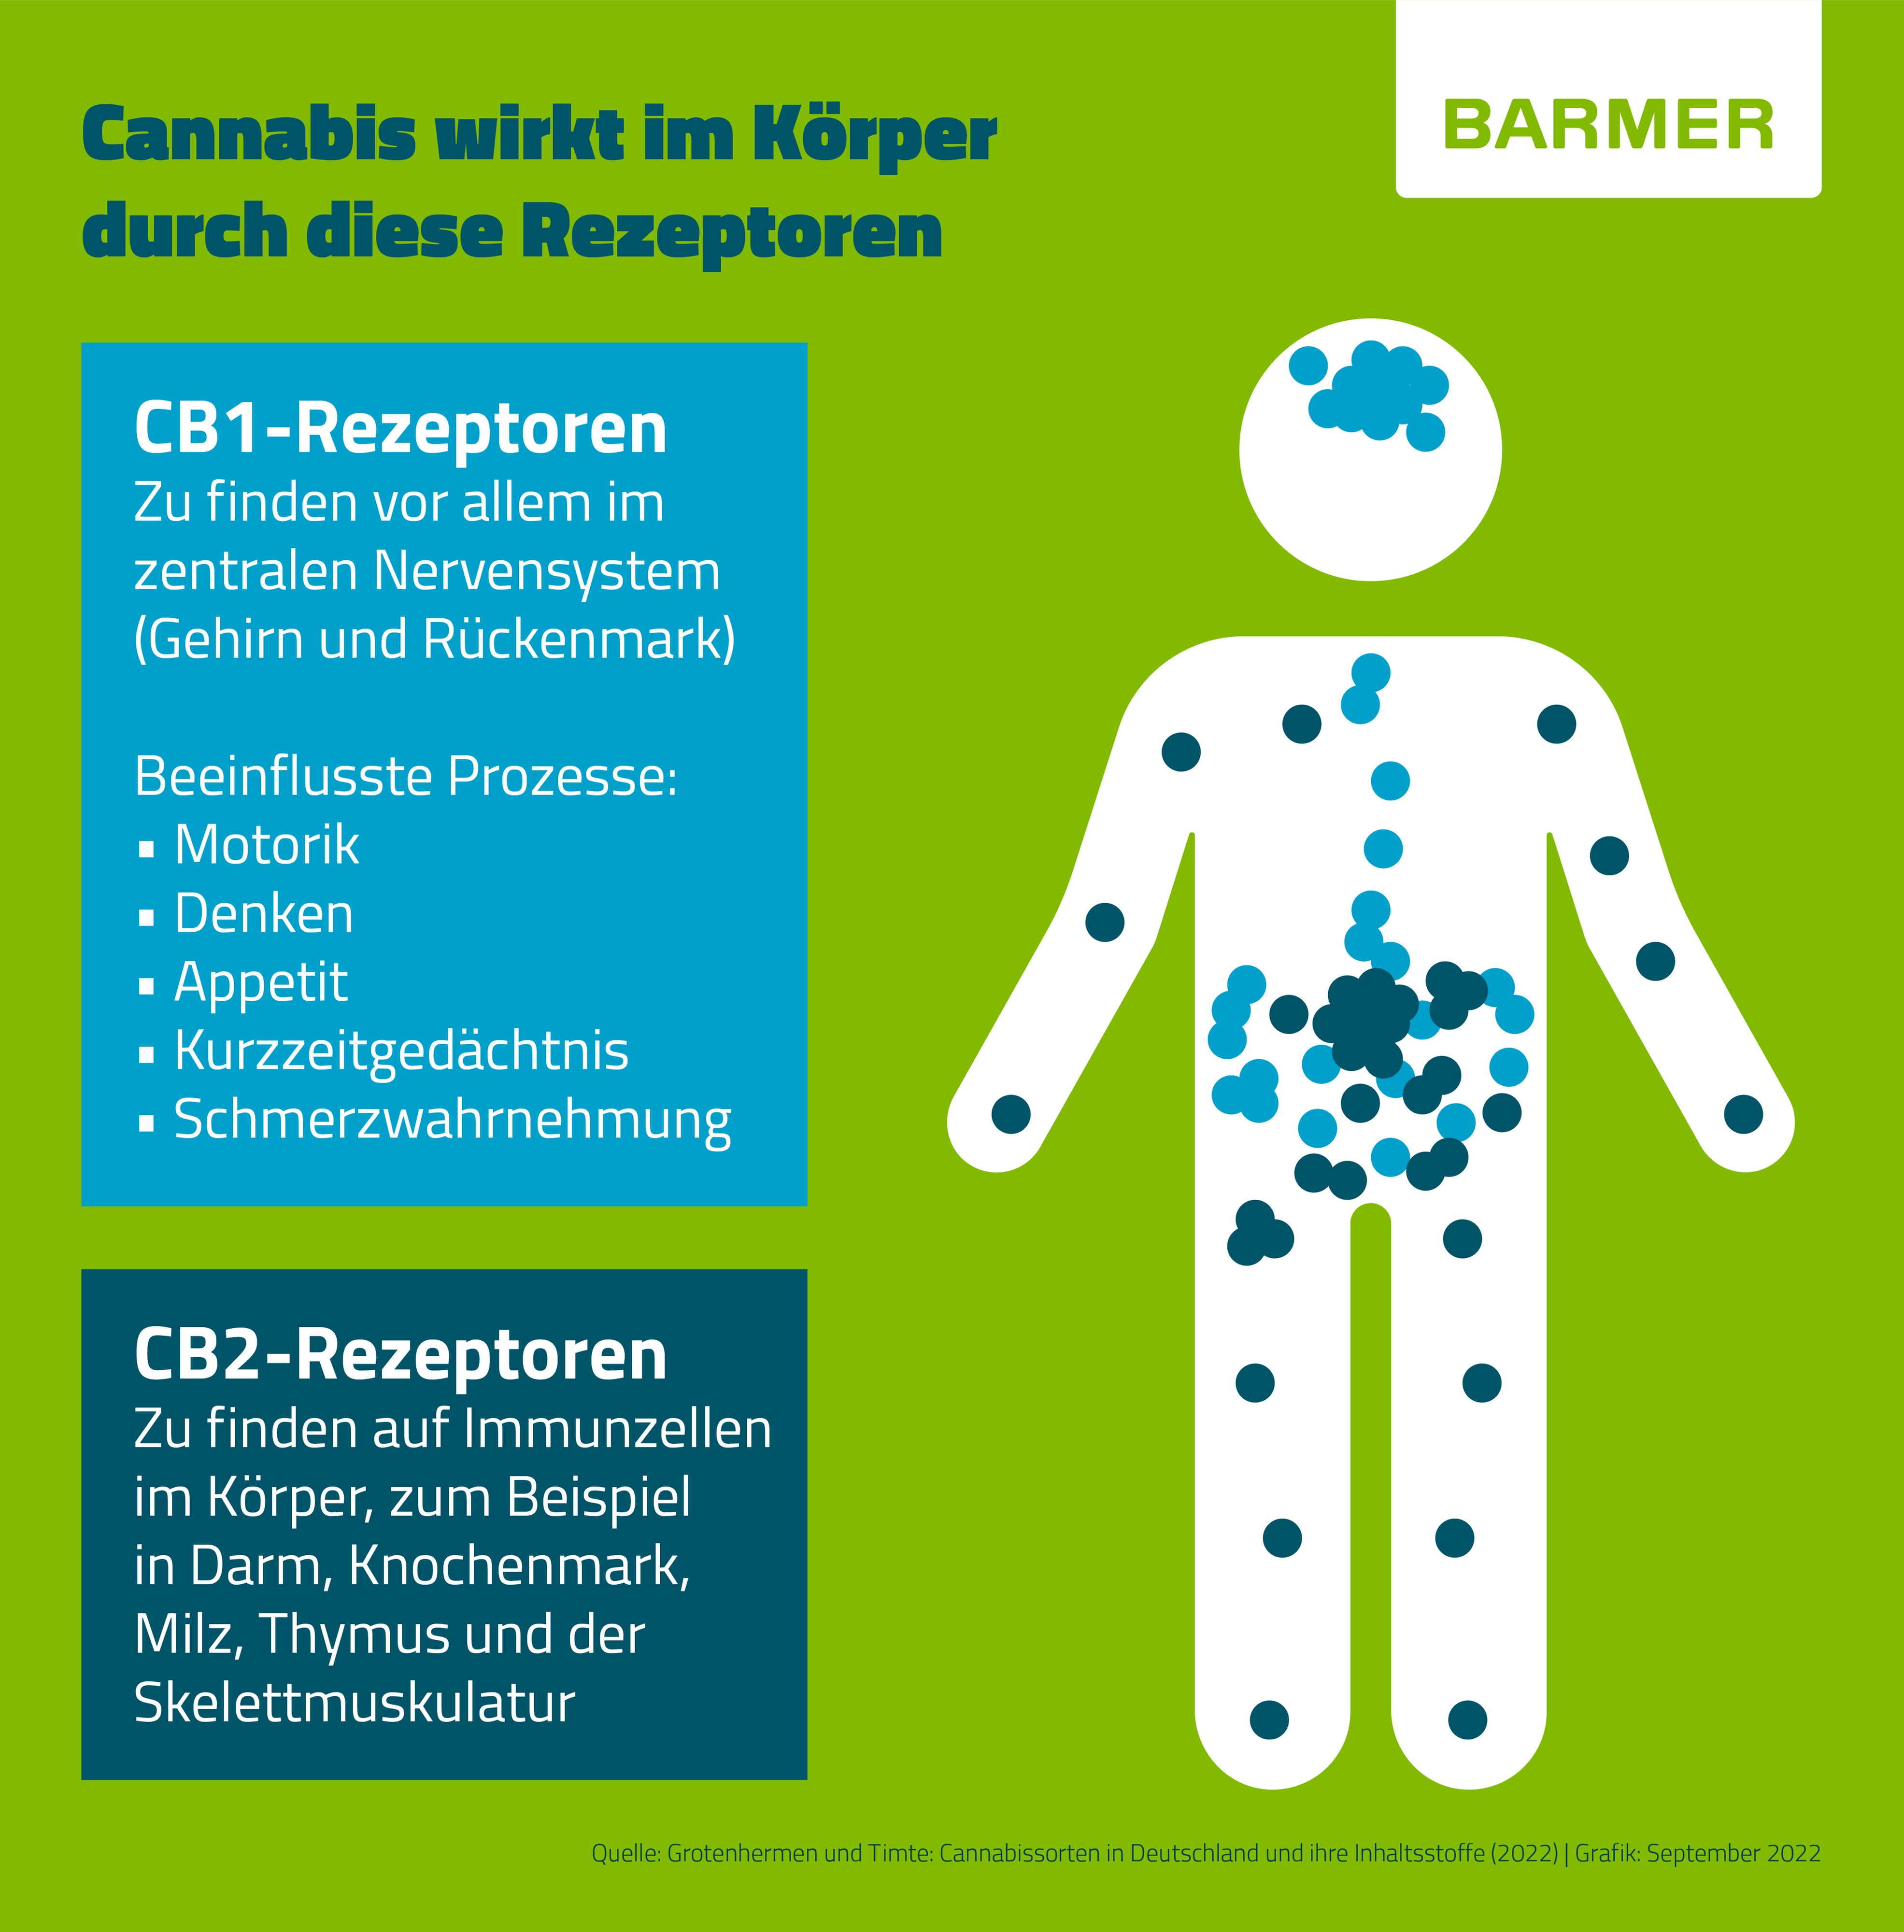 Durch bestimmte Rezeptoren im Körper entfaltet Cannabis seine Wirkung.